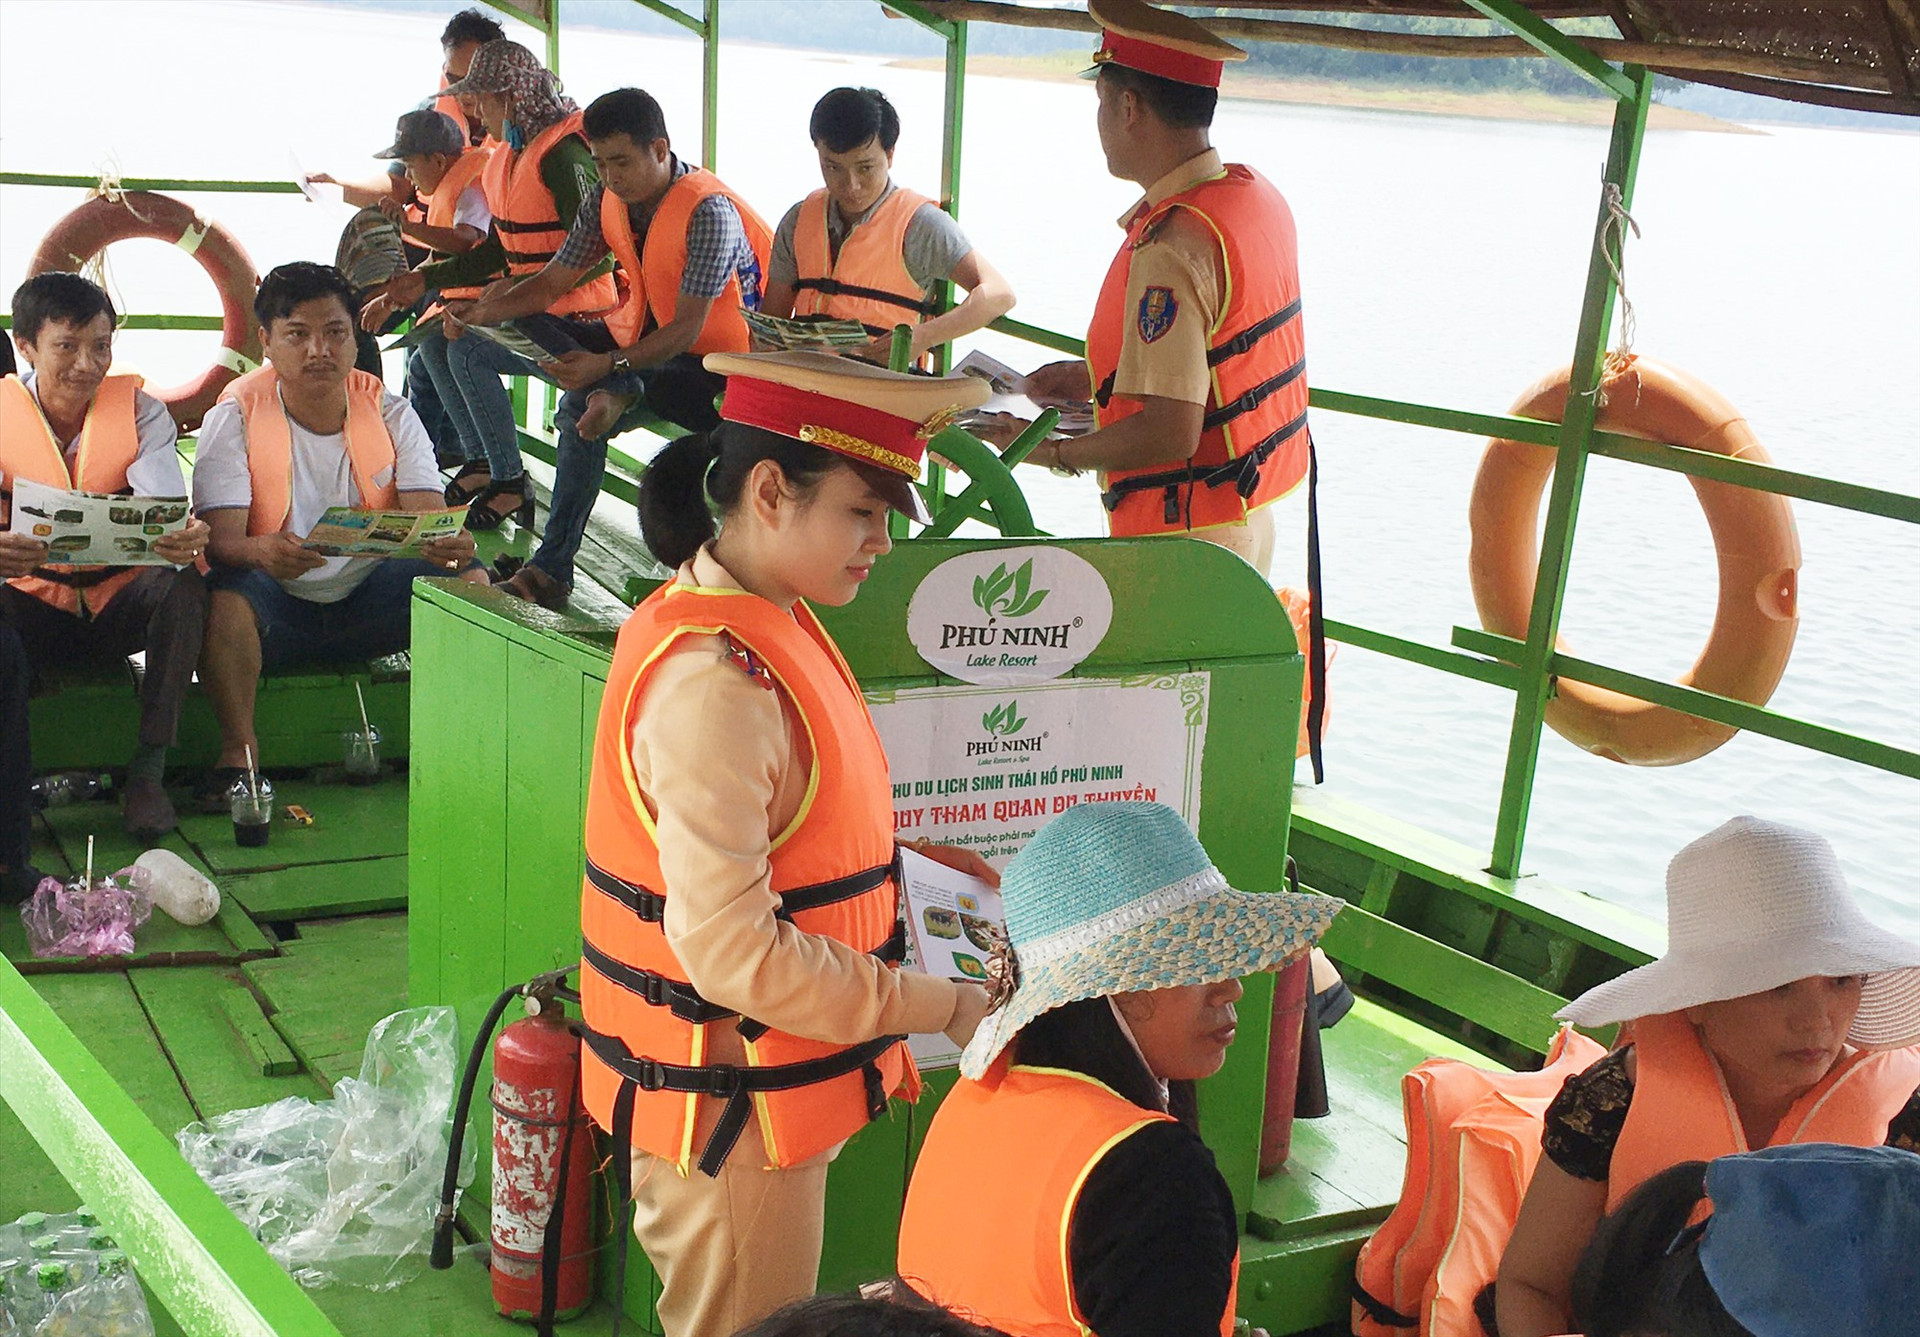 Cảnh sát đường thủy tuyên truyền, phát tờ rơi cho du khách ở hồ Phú Ninh. Ảnh: T.C